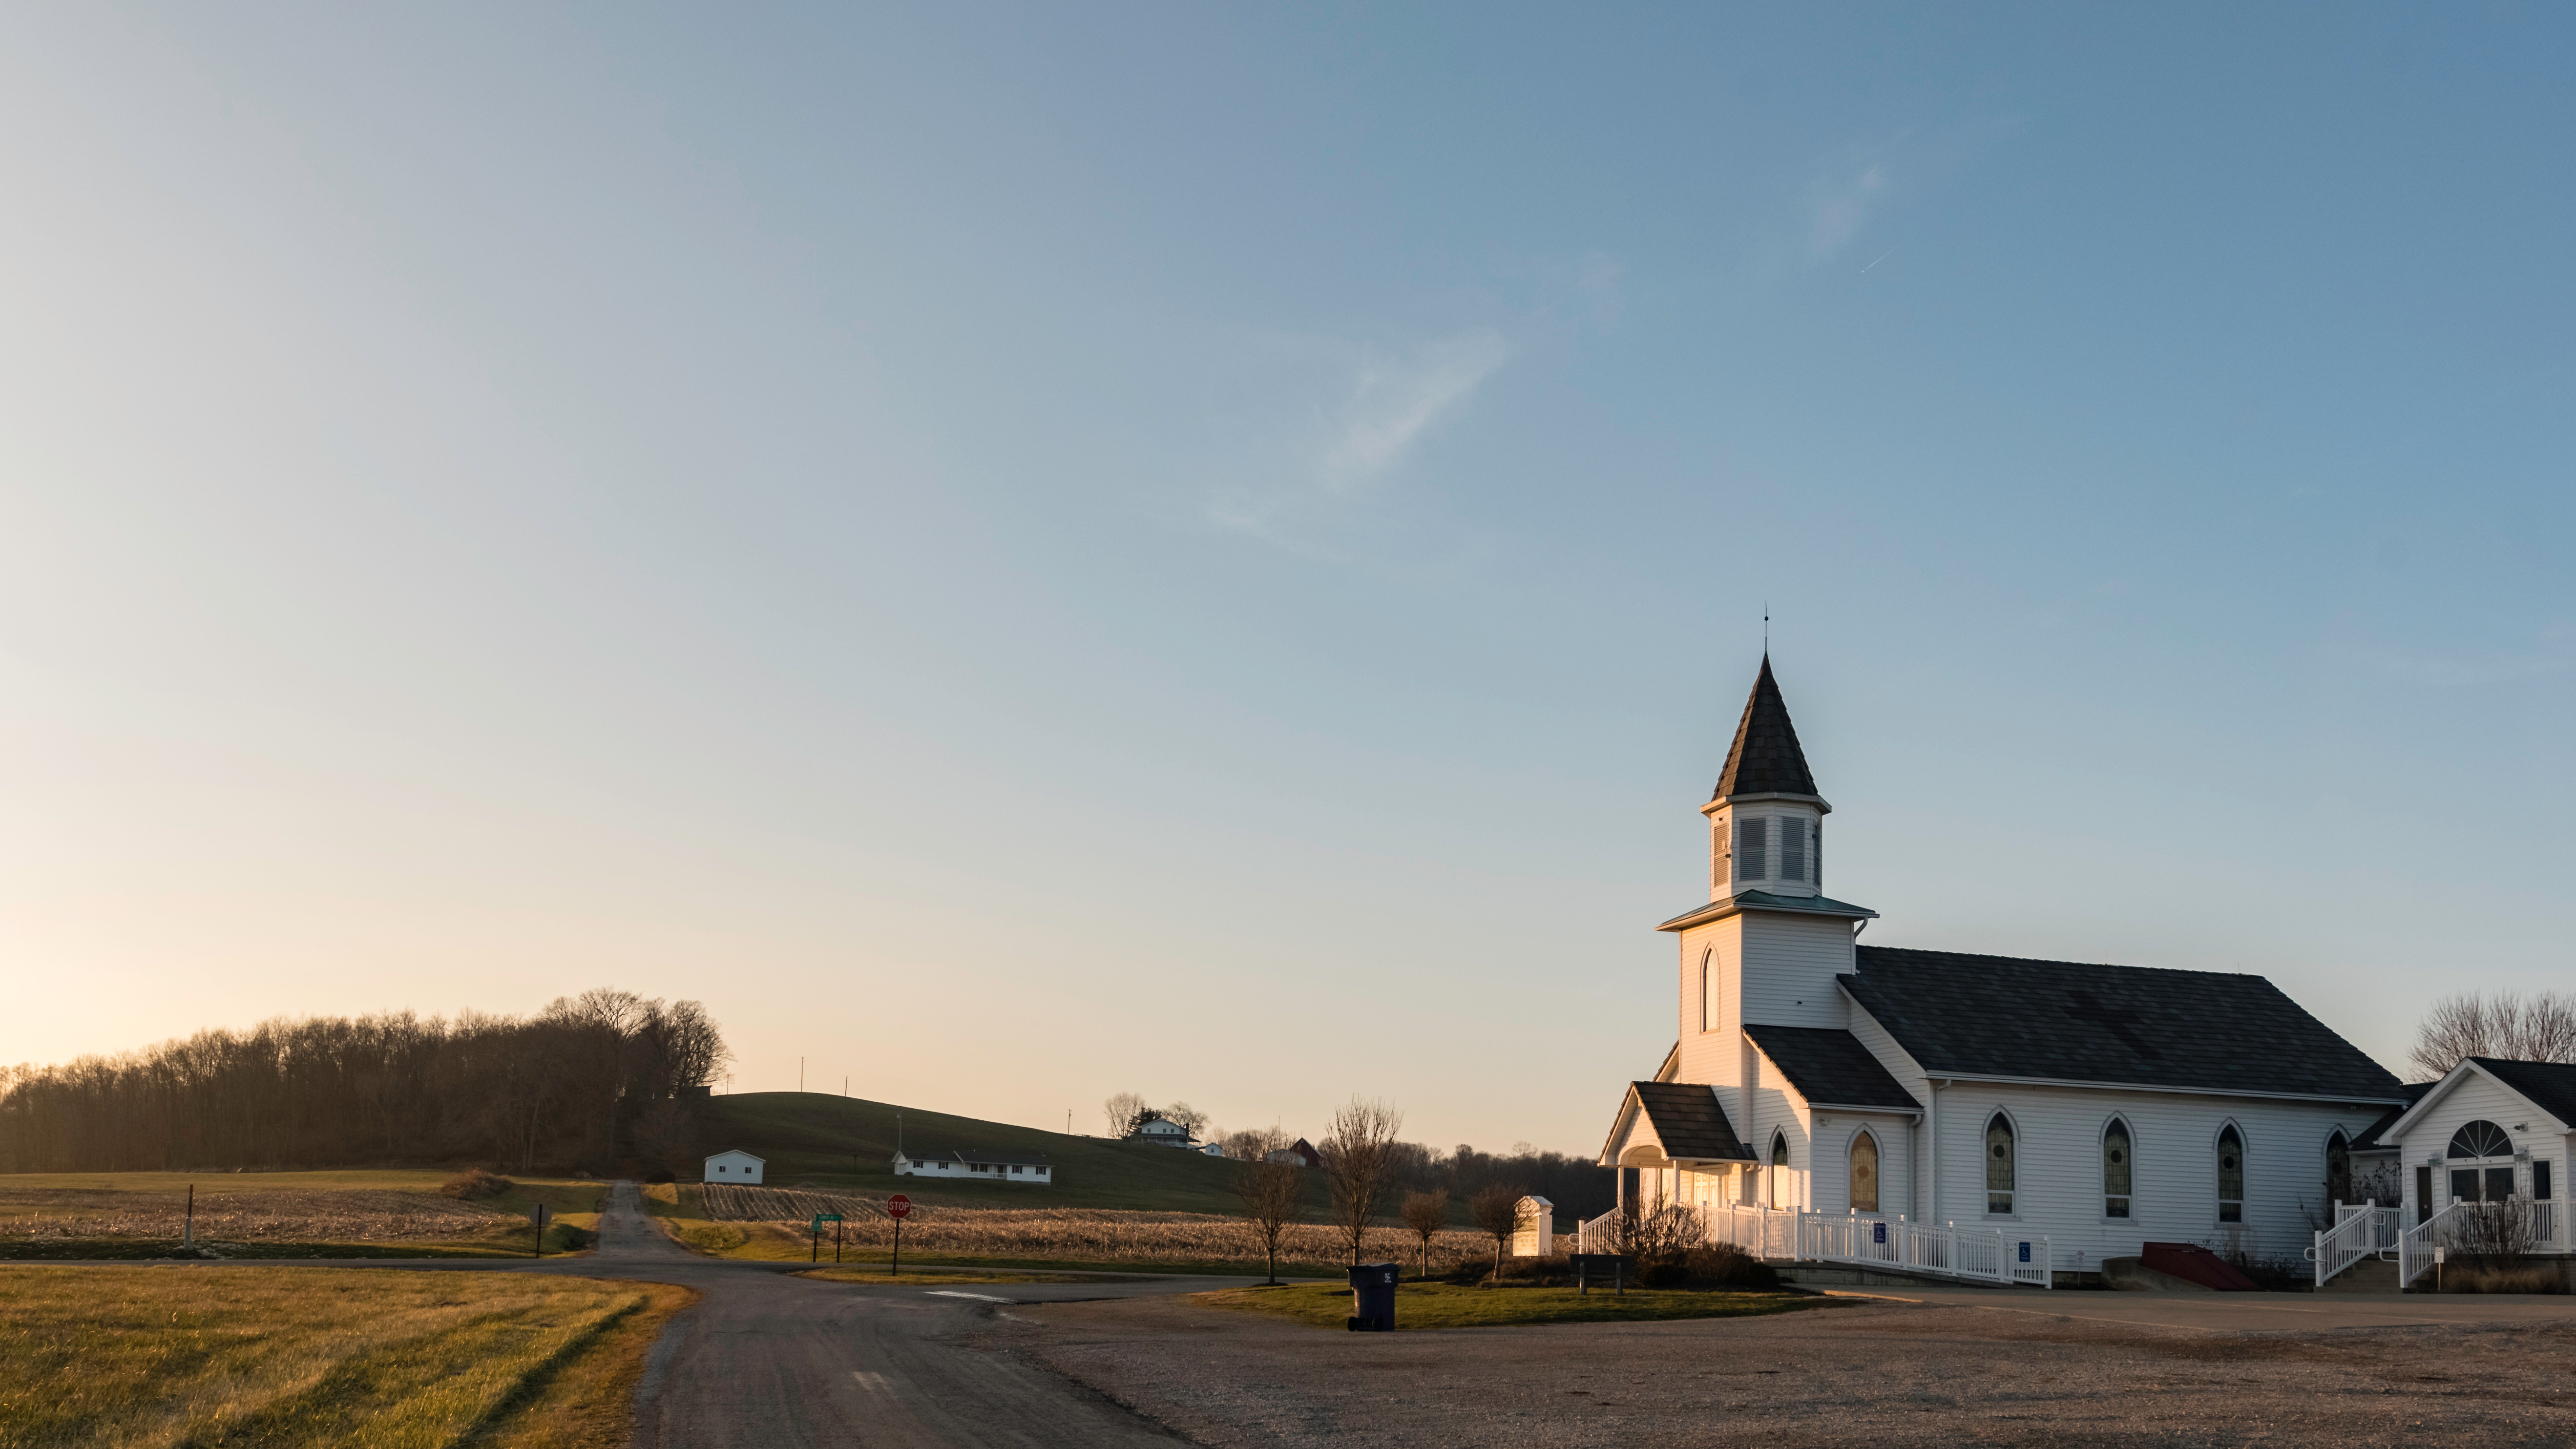 Die Hopewell United Methodist Church im ländlichen Perry County, aufgenommen am 5. Januar 2019 in Glenford, Ohio. | Quelle: Shutterstock